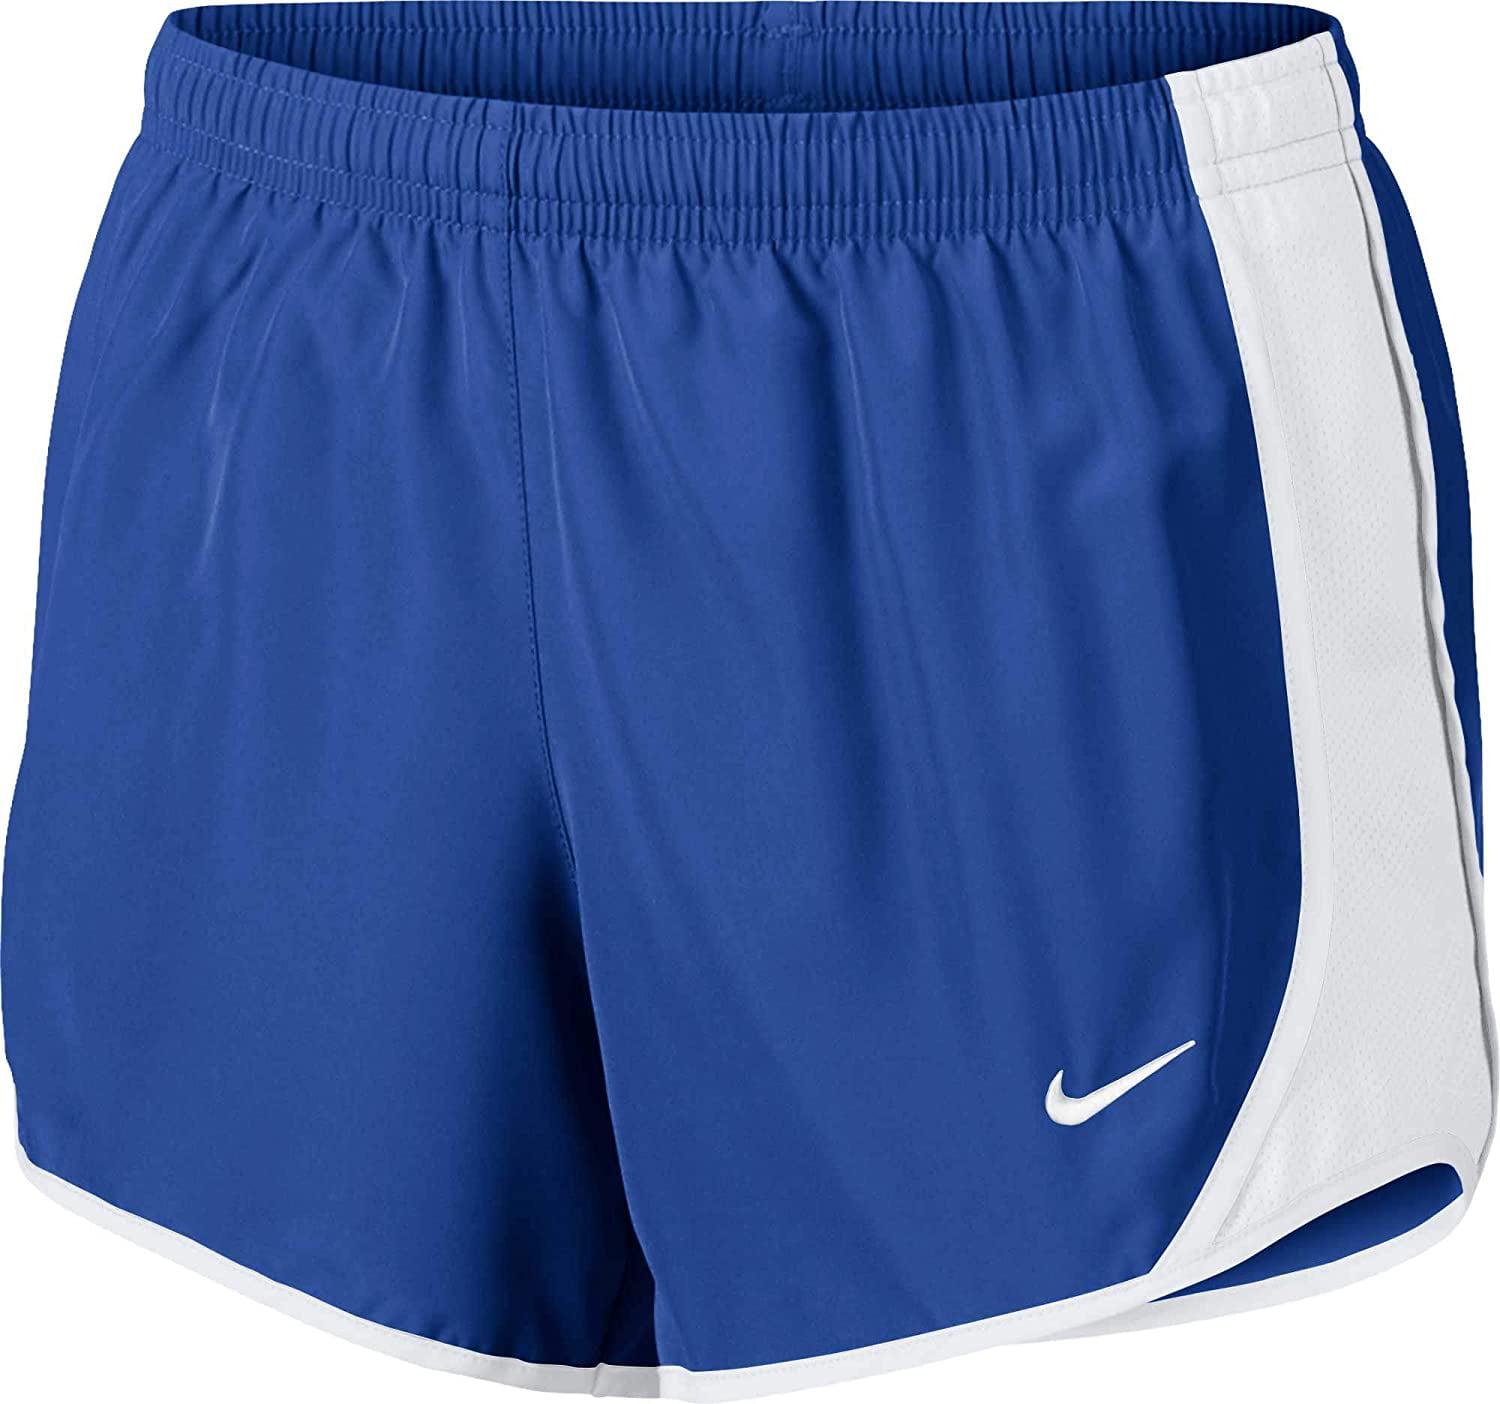 Nike Girls Running Shorts Medium Blue